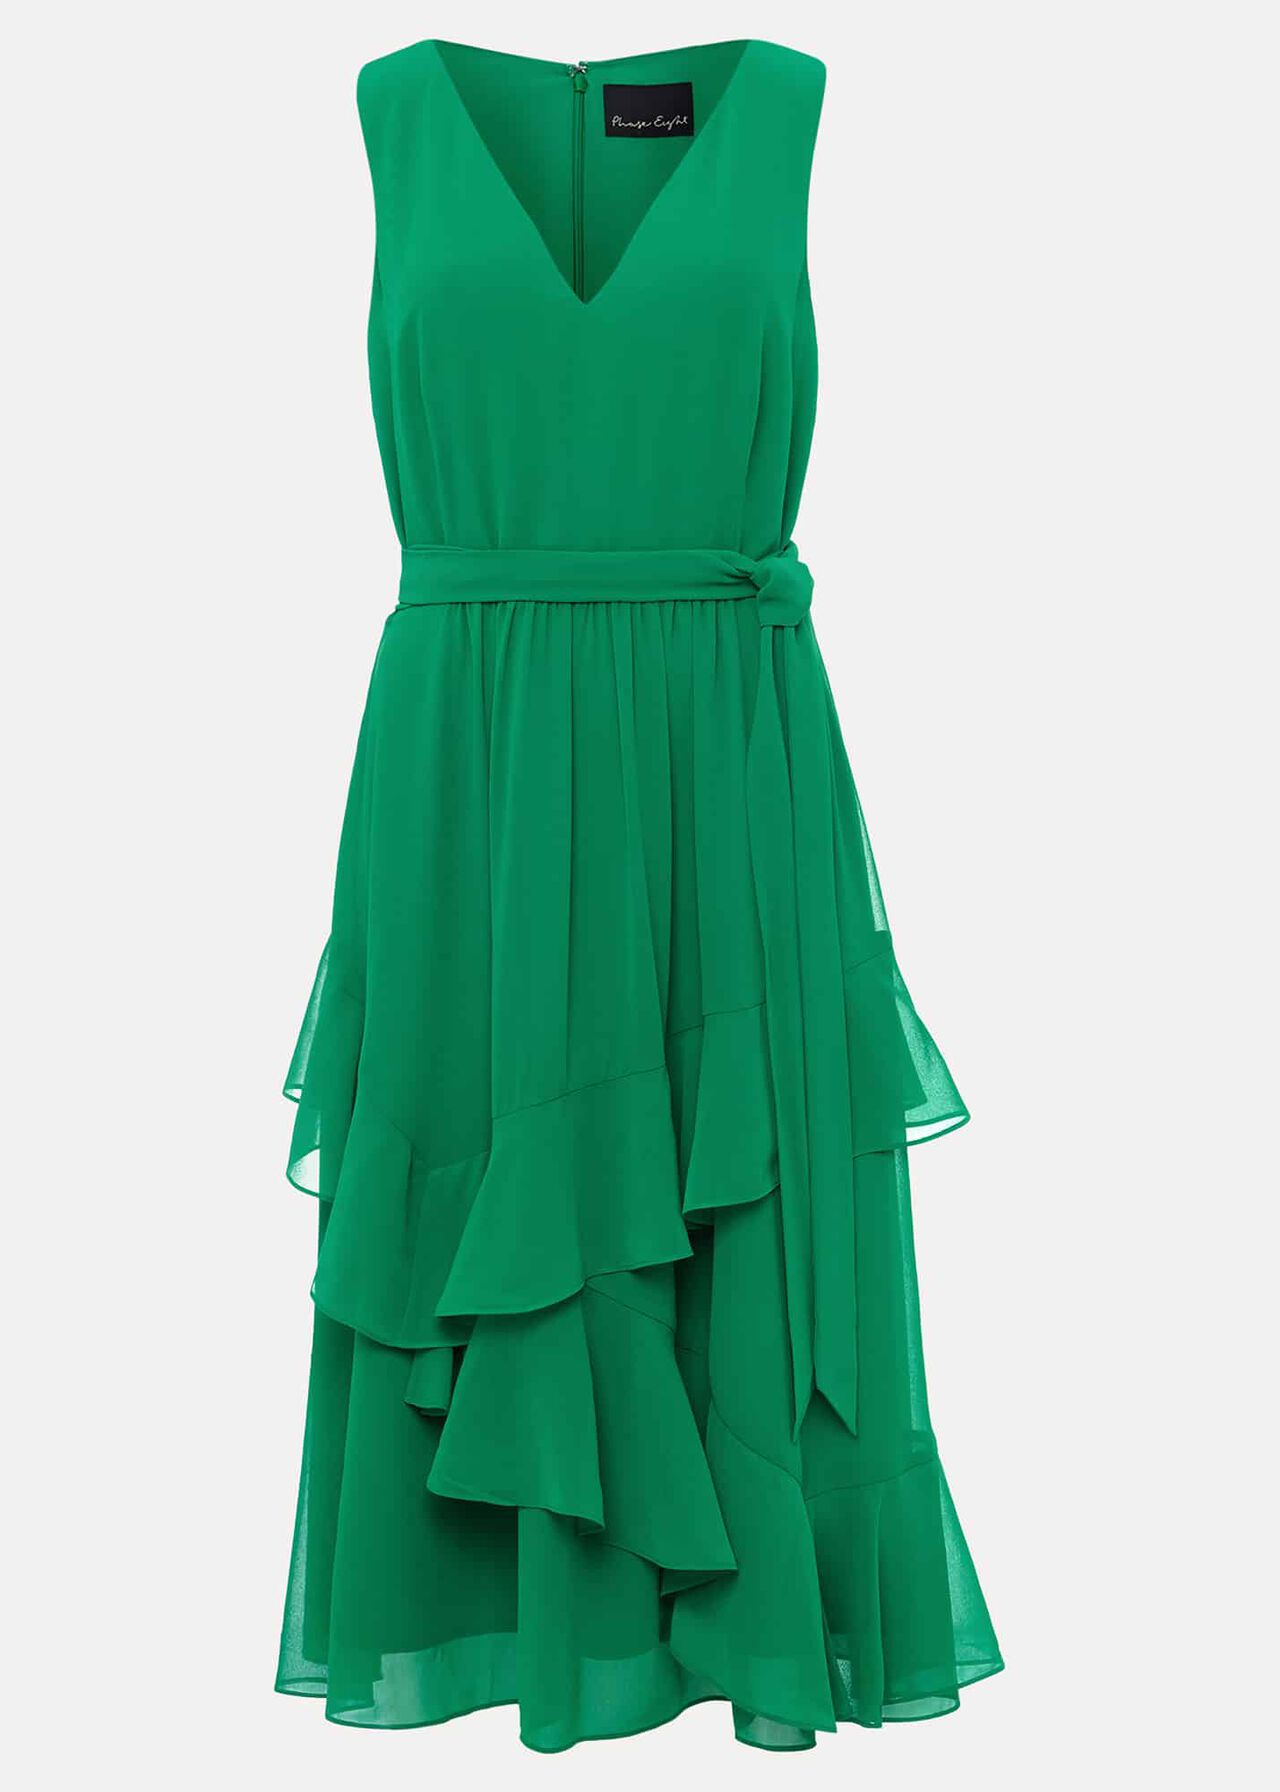 Breesha Green Midaxi Dress